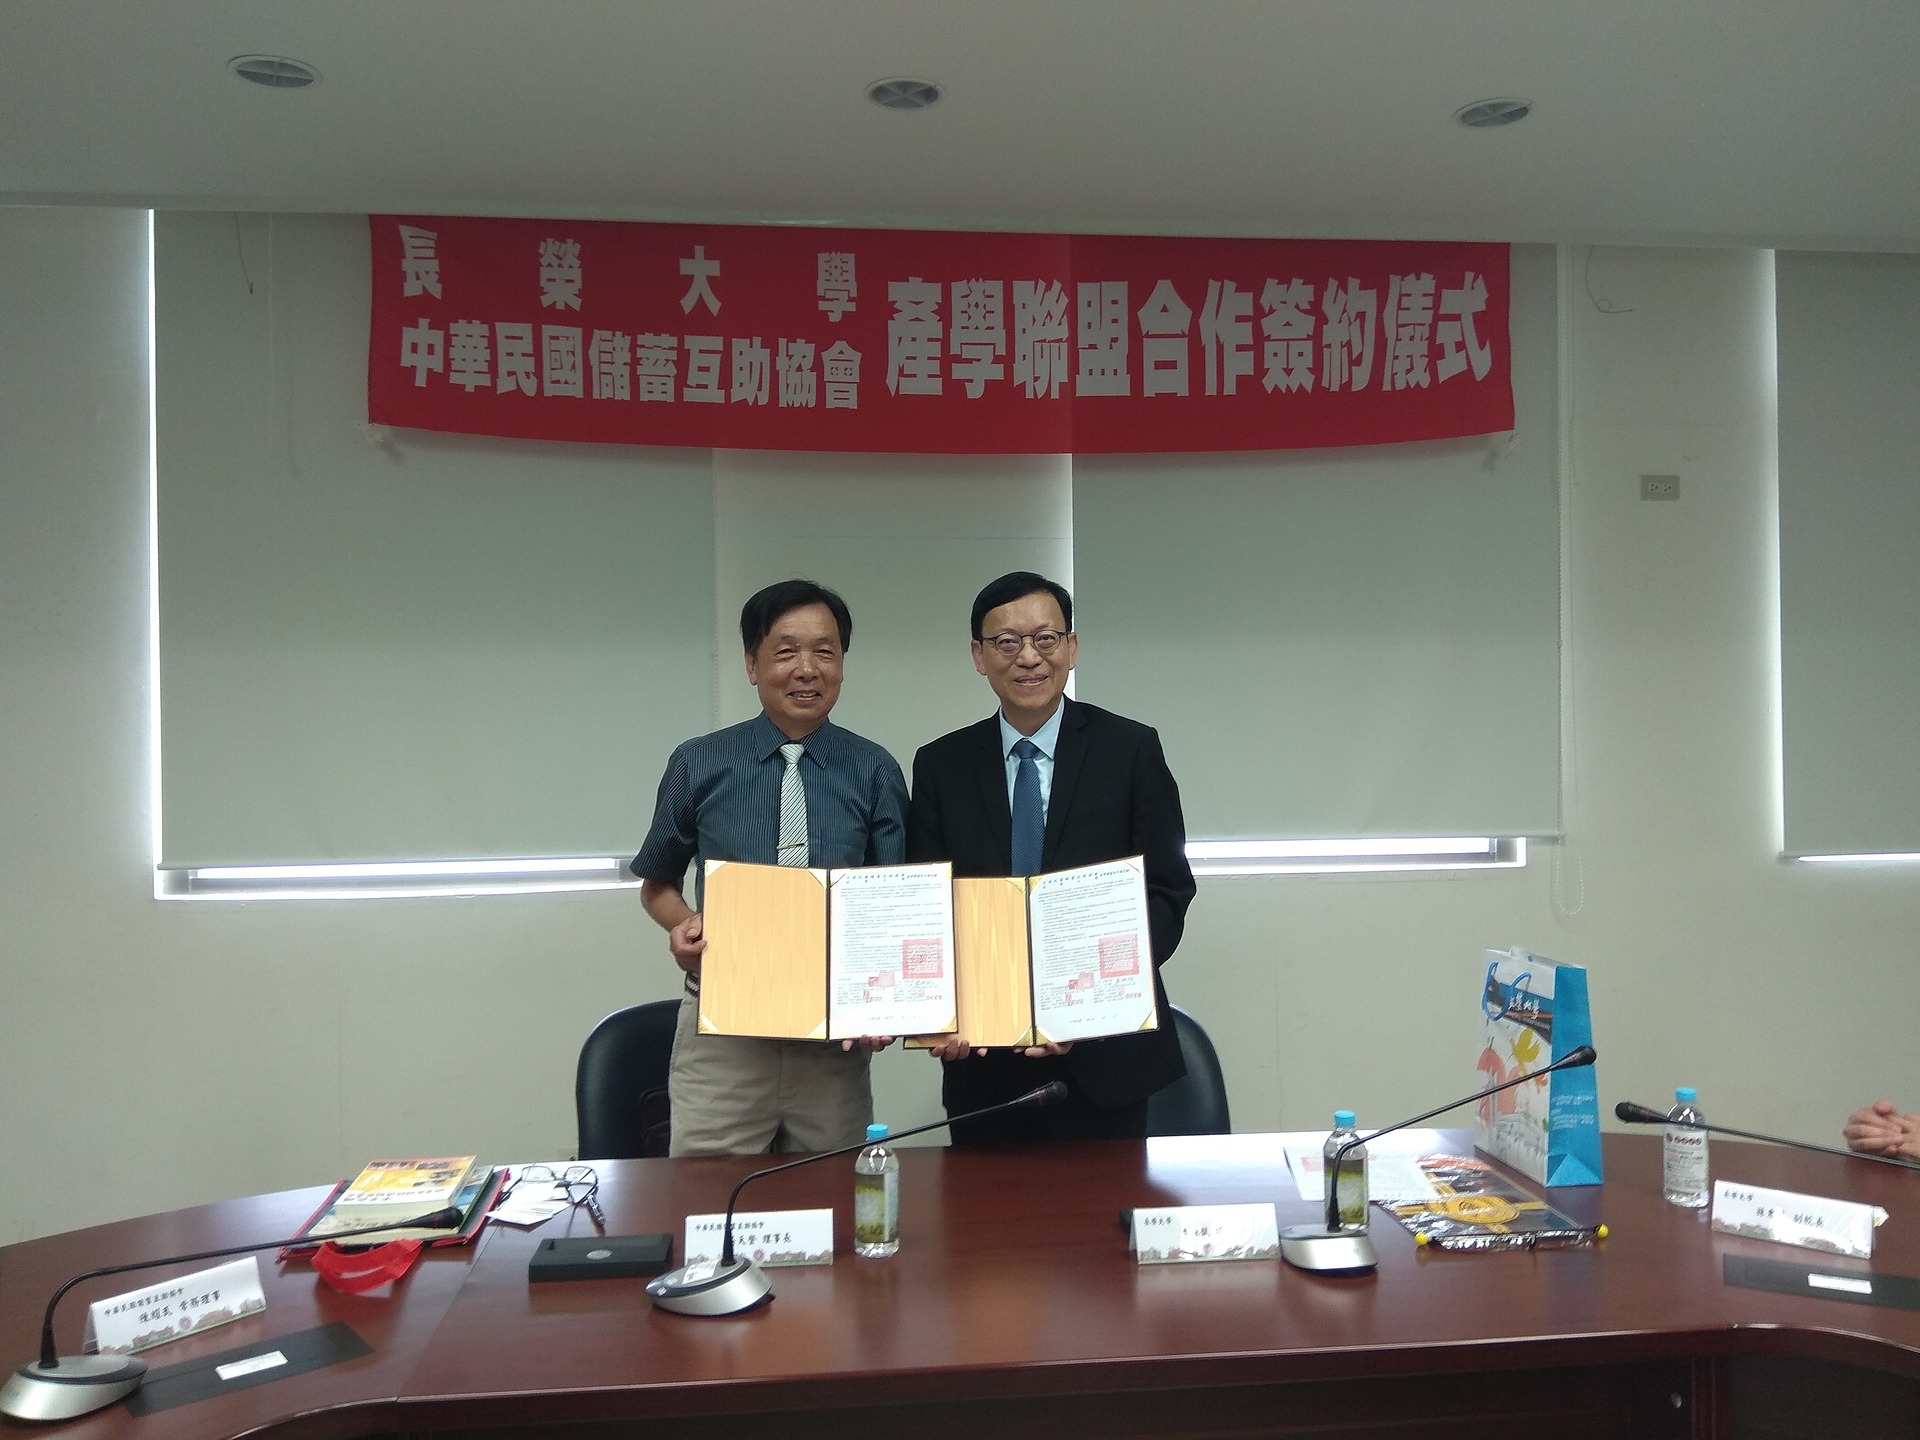 社會互助 社區共好 長榮大學與中華民國儲蓄互助協會簽署產學聯盟合作